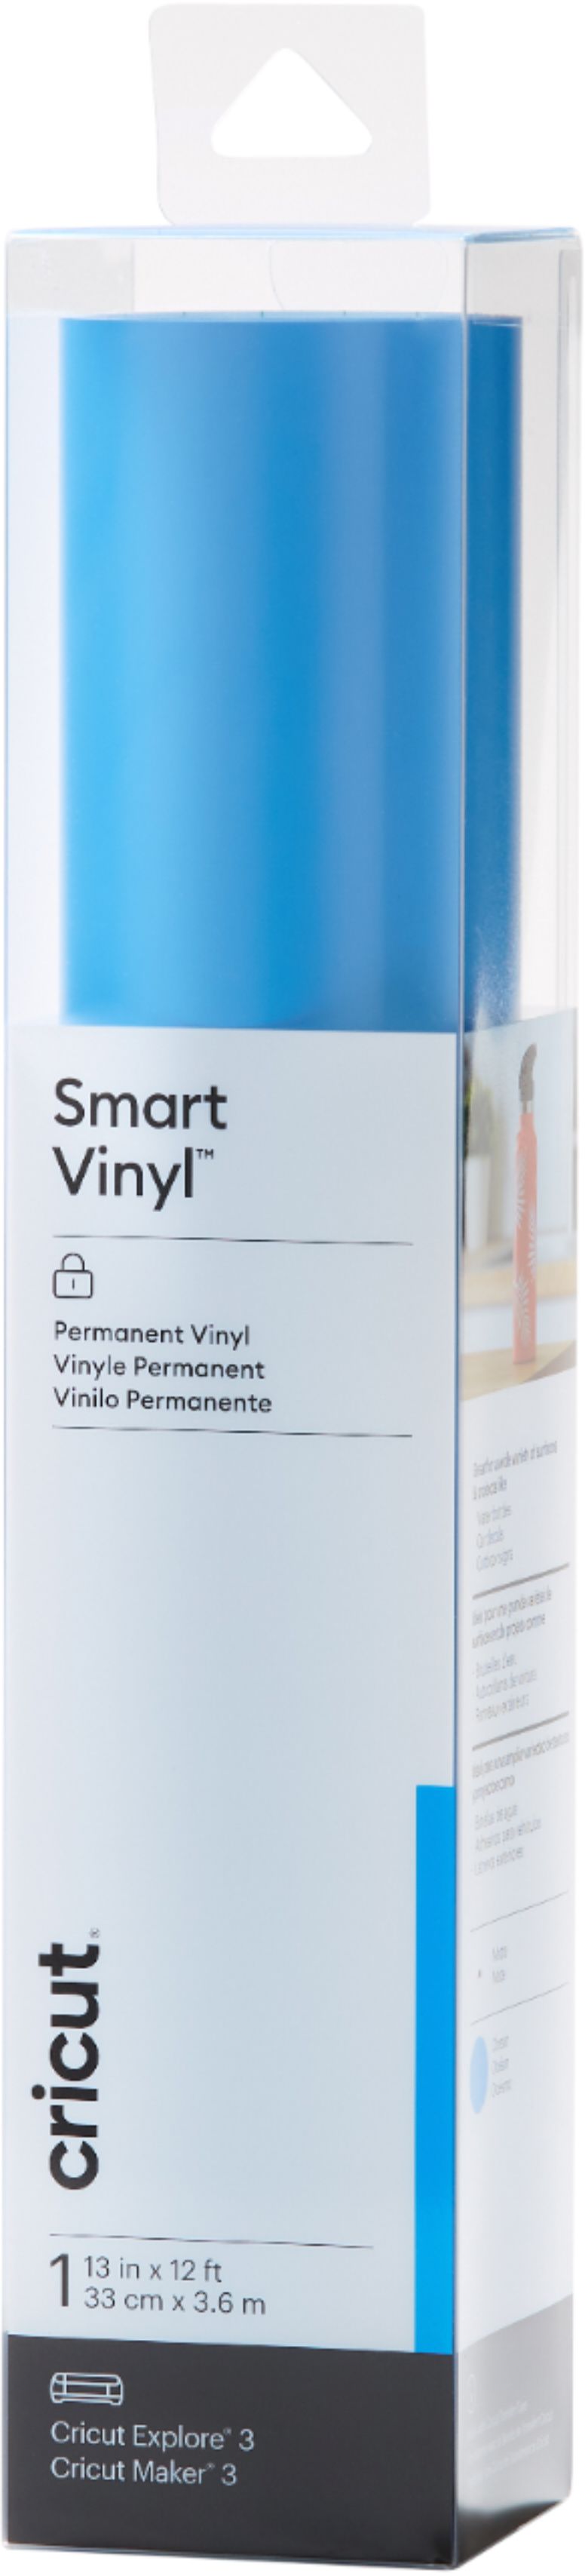 Cricut Smart Vinyl – Permanent 12 ft Ocean 2008535 - Best Buy